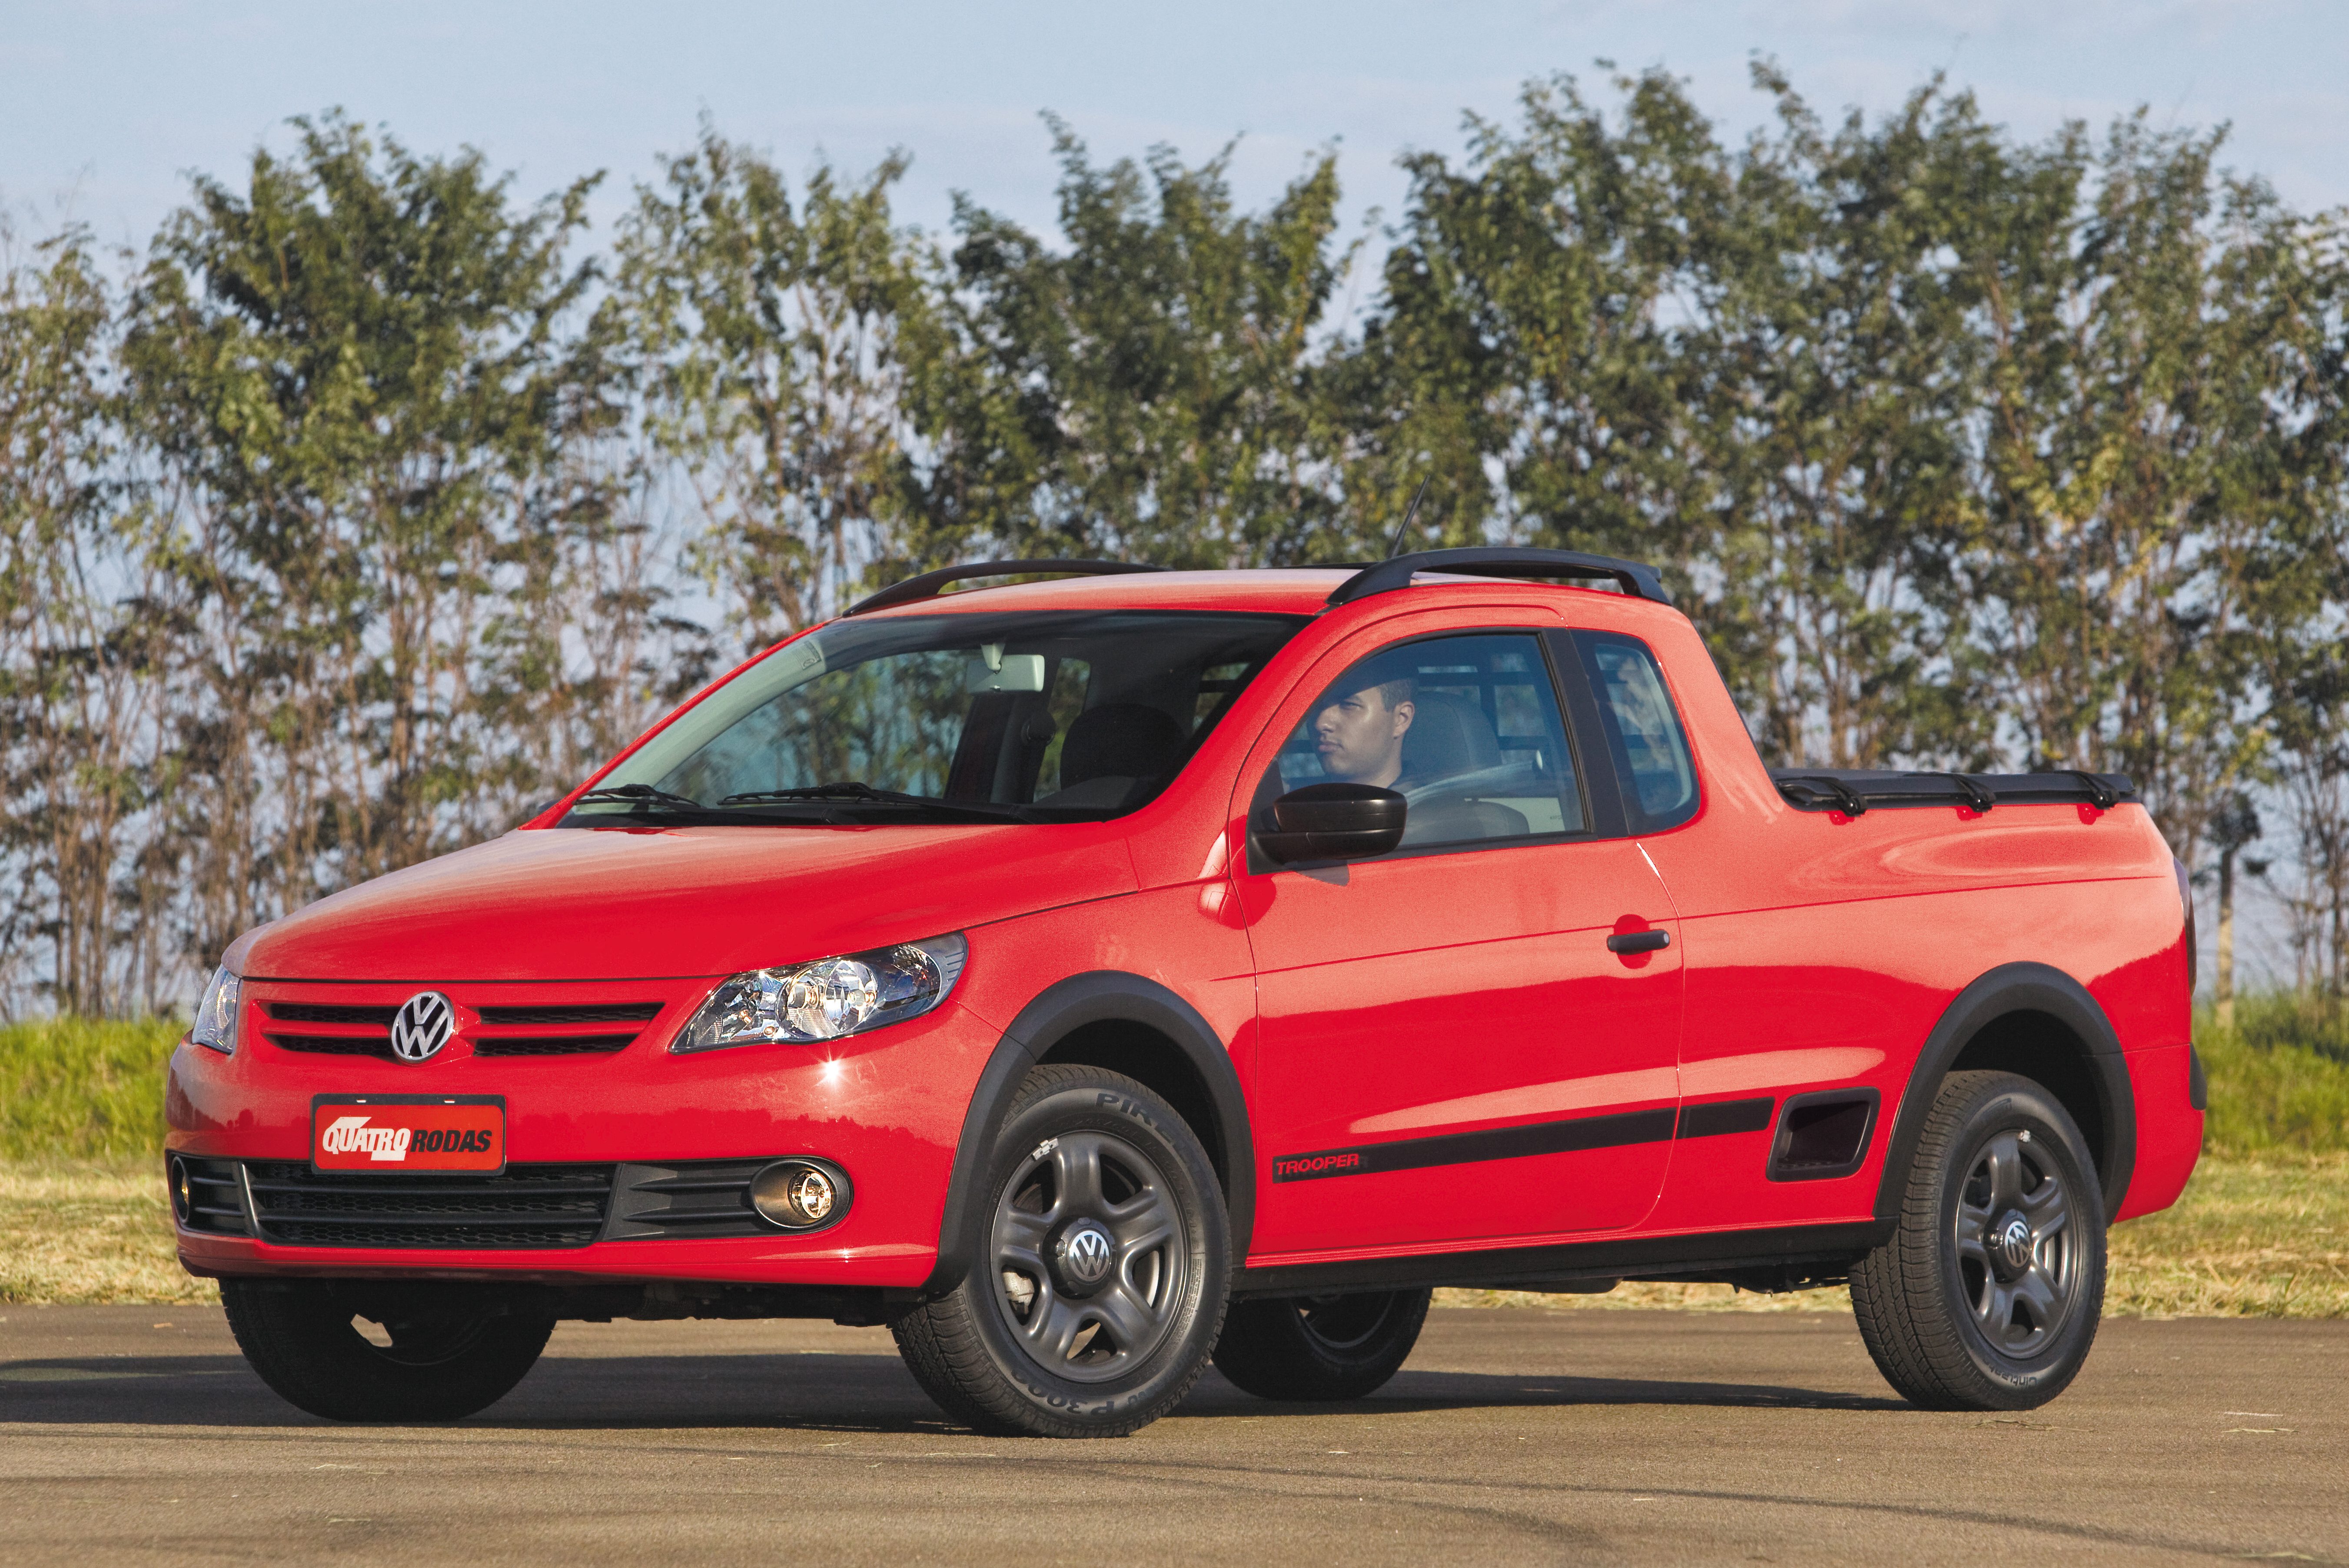 Volkswagen Saveiro 2014 herda cara reta de Gol e parte de R